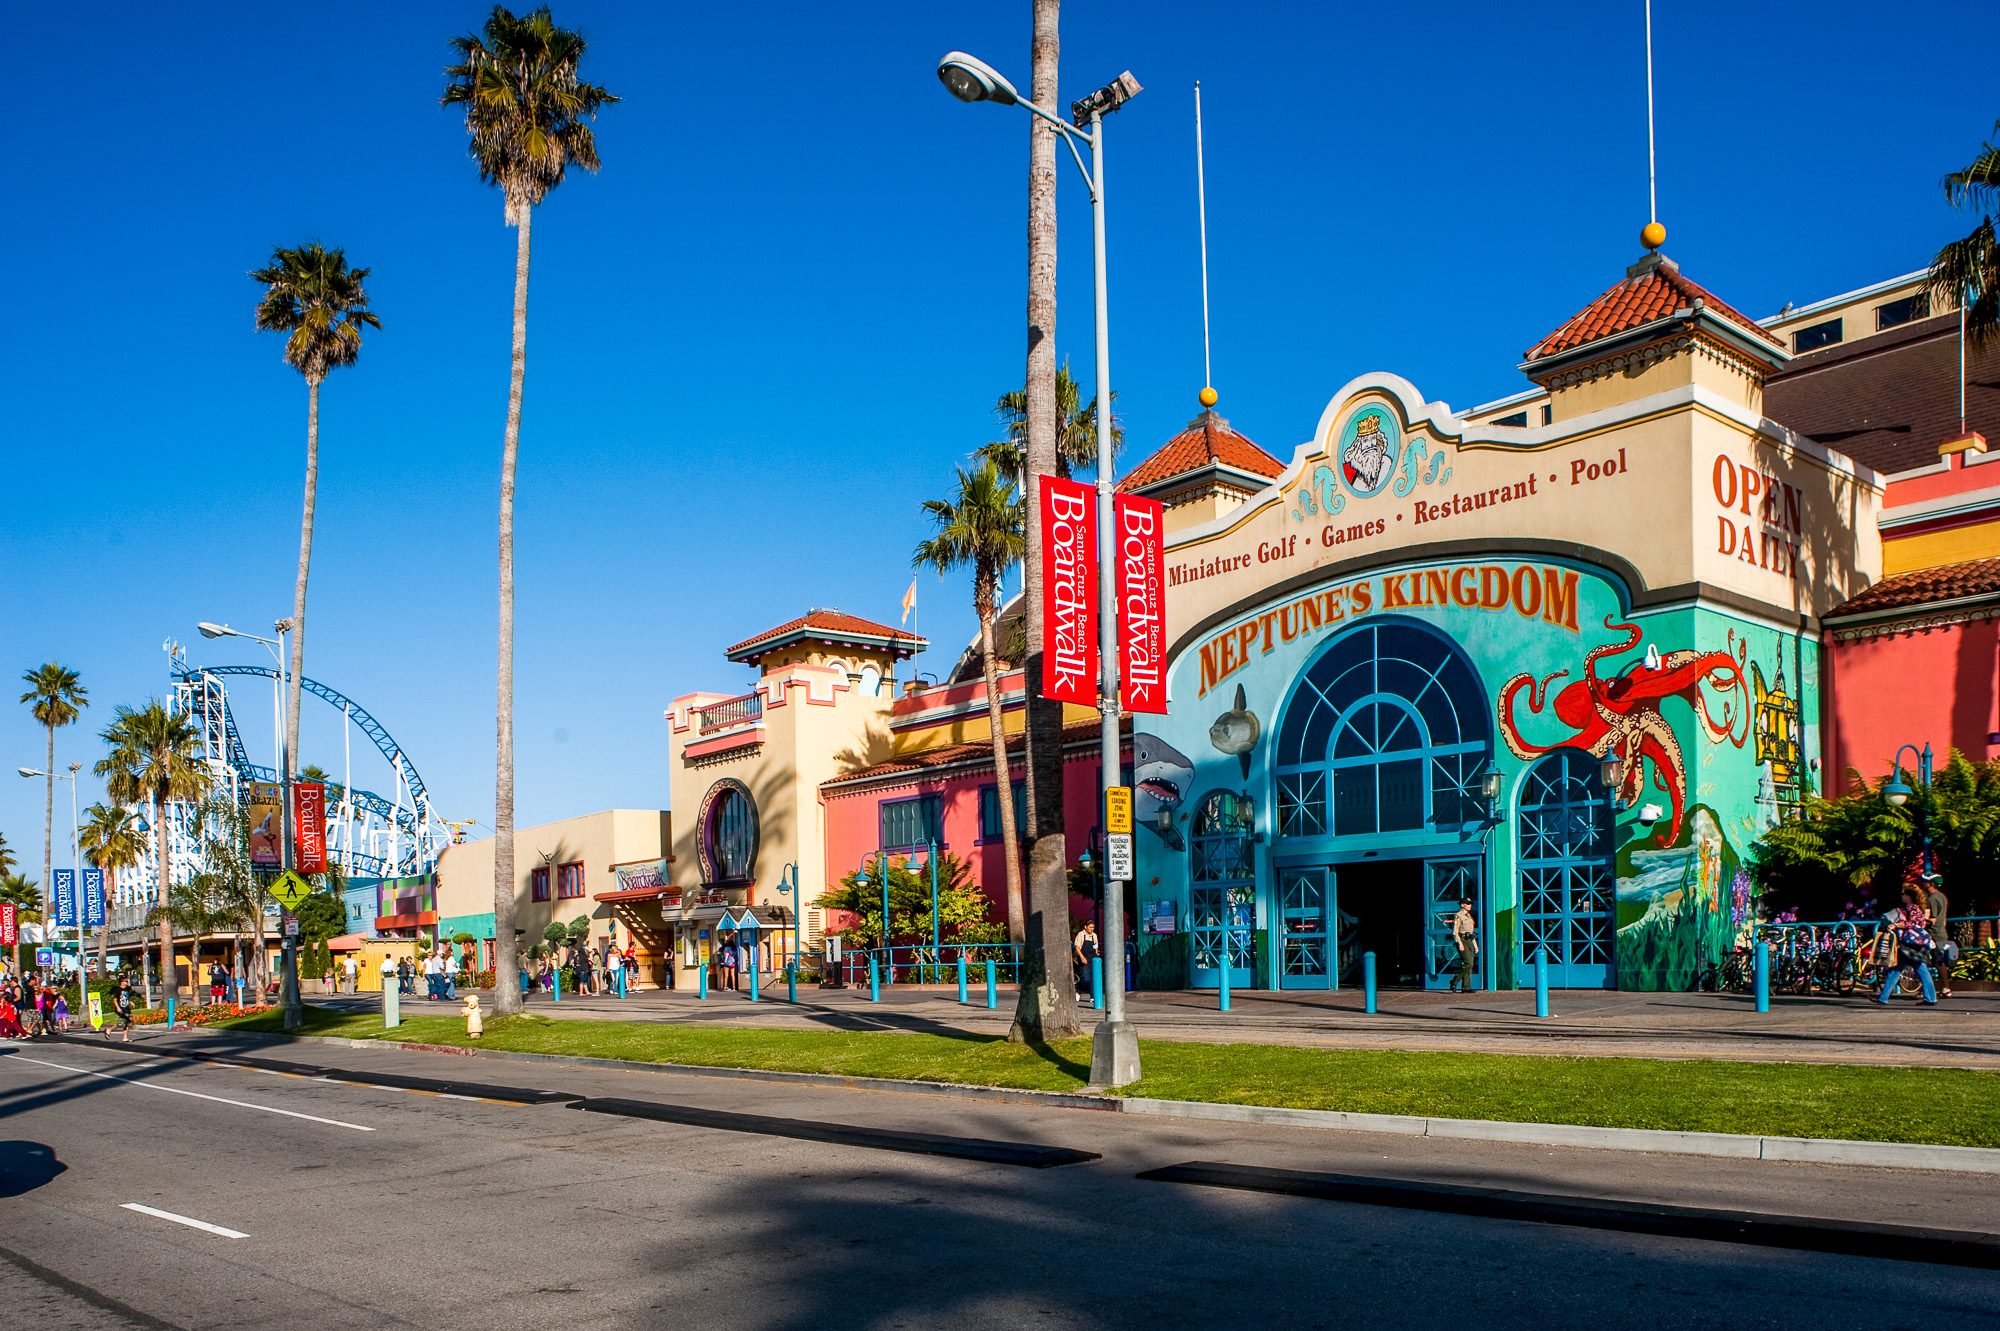 Santa Cruz Beach Boardwalk. Parc d'attraction datant des années 1920.